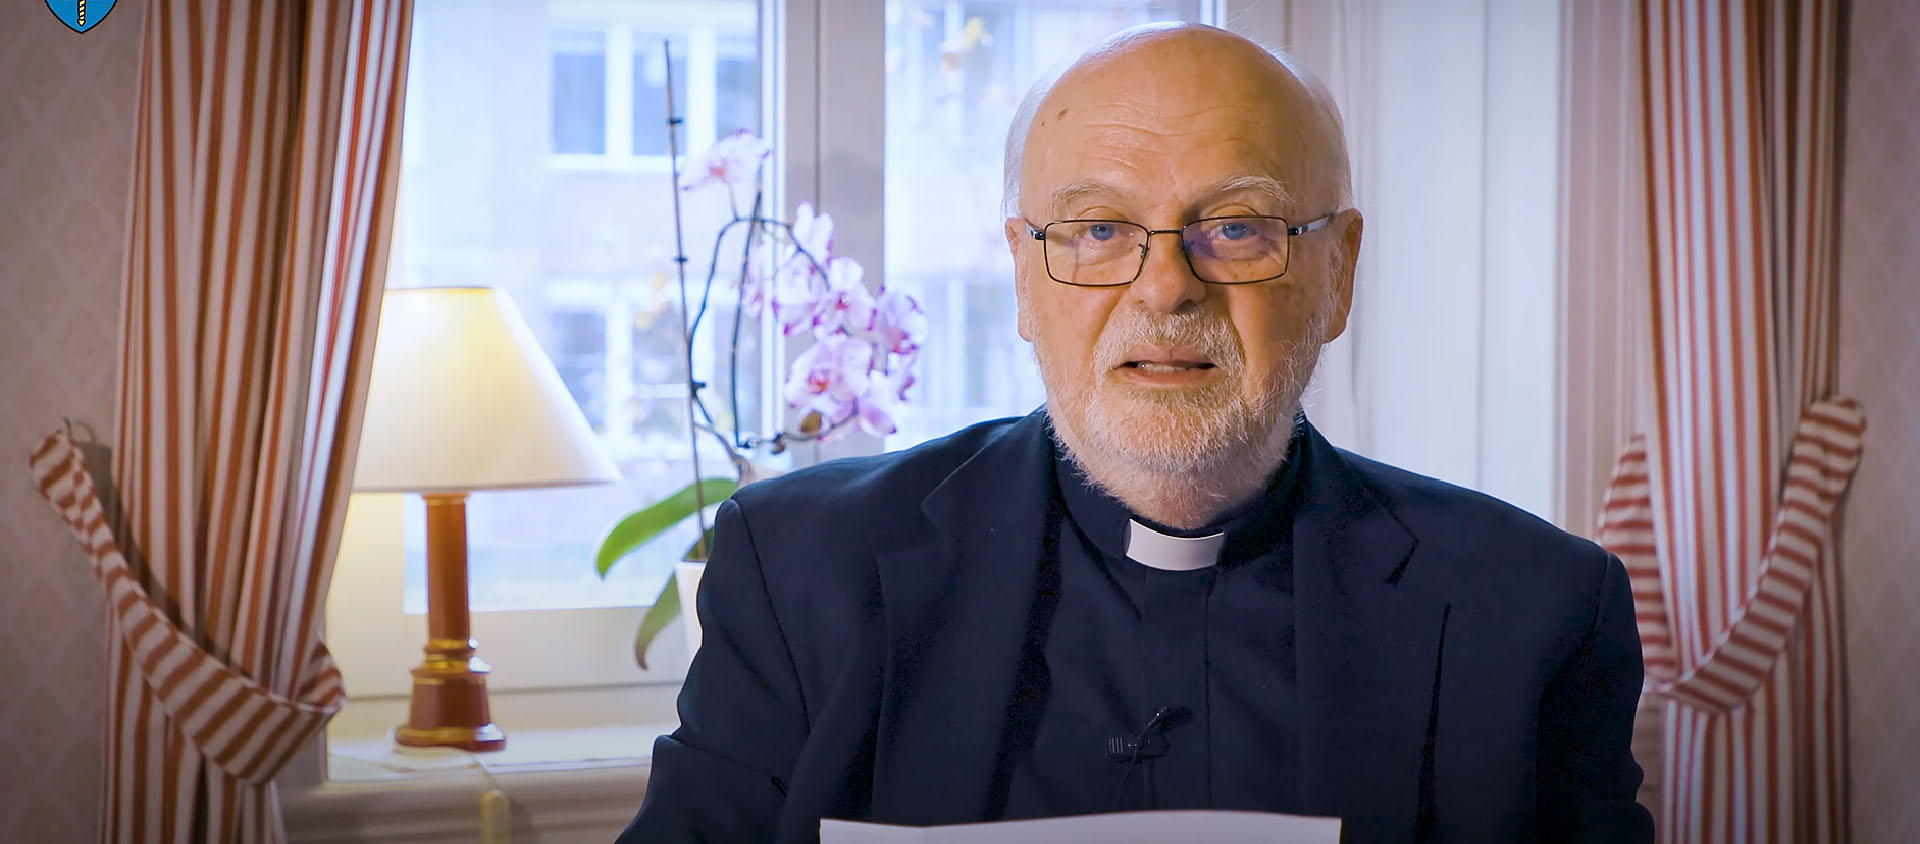 Mgr Anders Arborelius, évêque de Stockholm, explique la démarche de la Conférence des évêques nordiques | Capture-écran